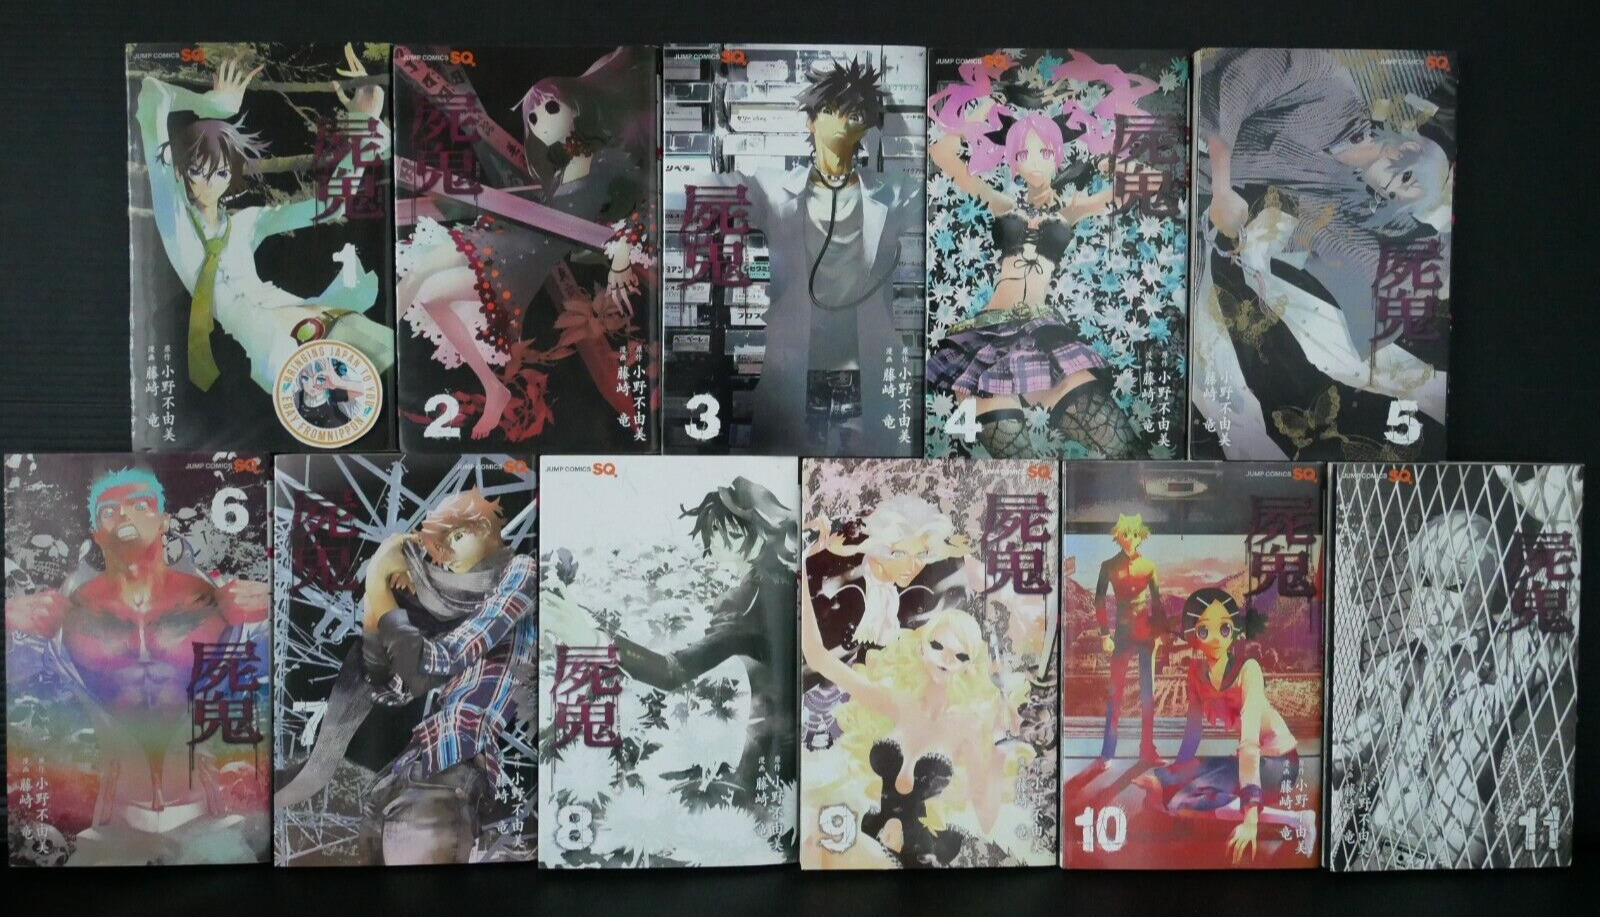 Shiki Manga Vol.1-11 Manga Complete Set (Damage) by Ryu Fujisaki & Fuyumi Ono